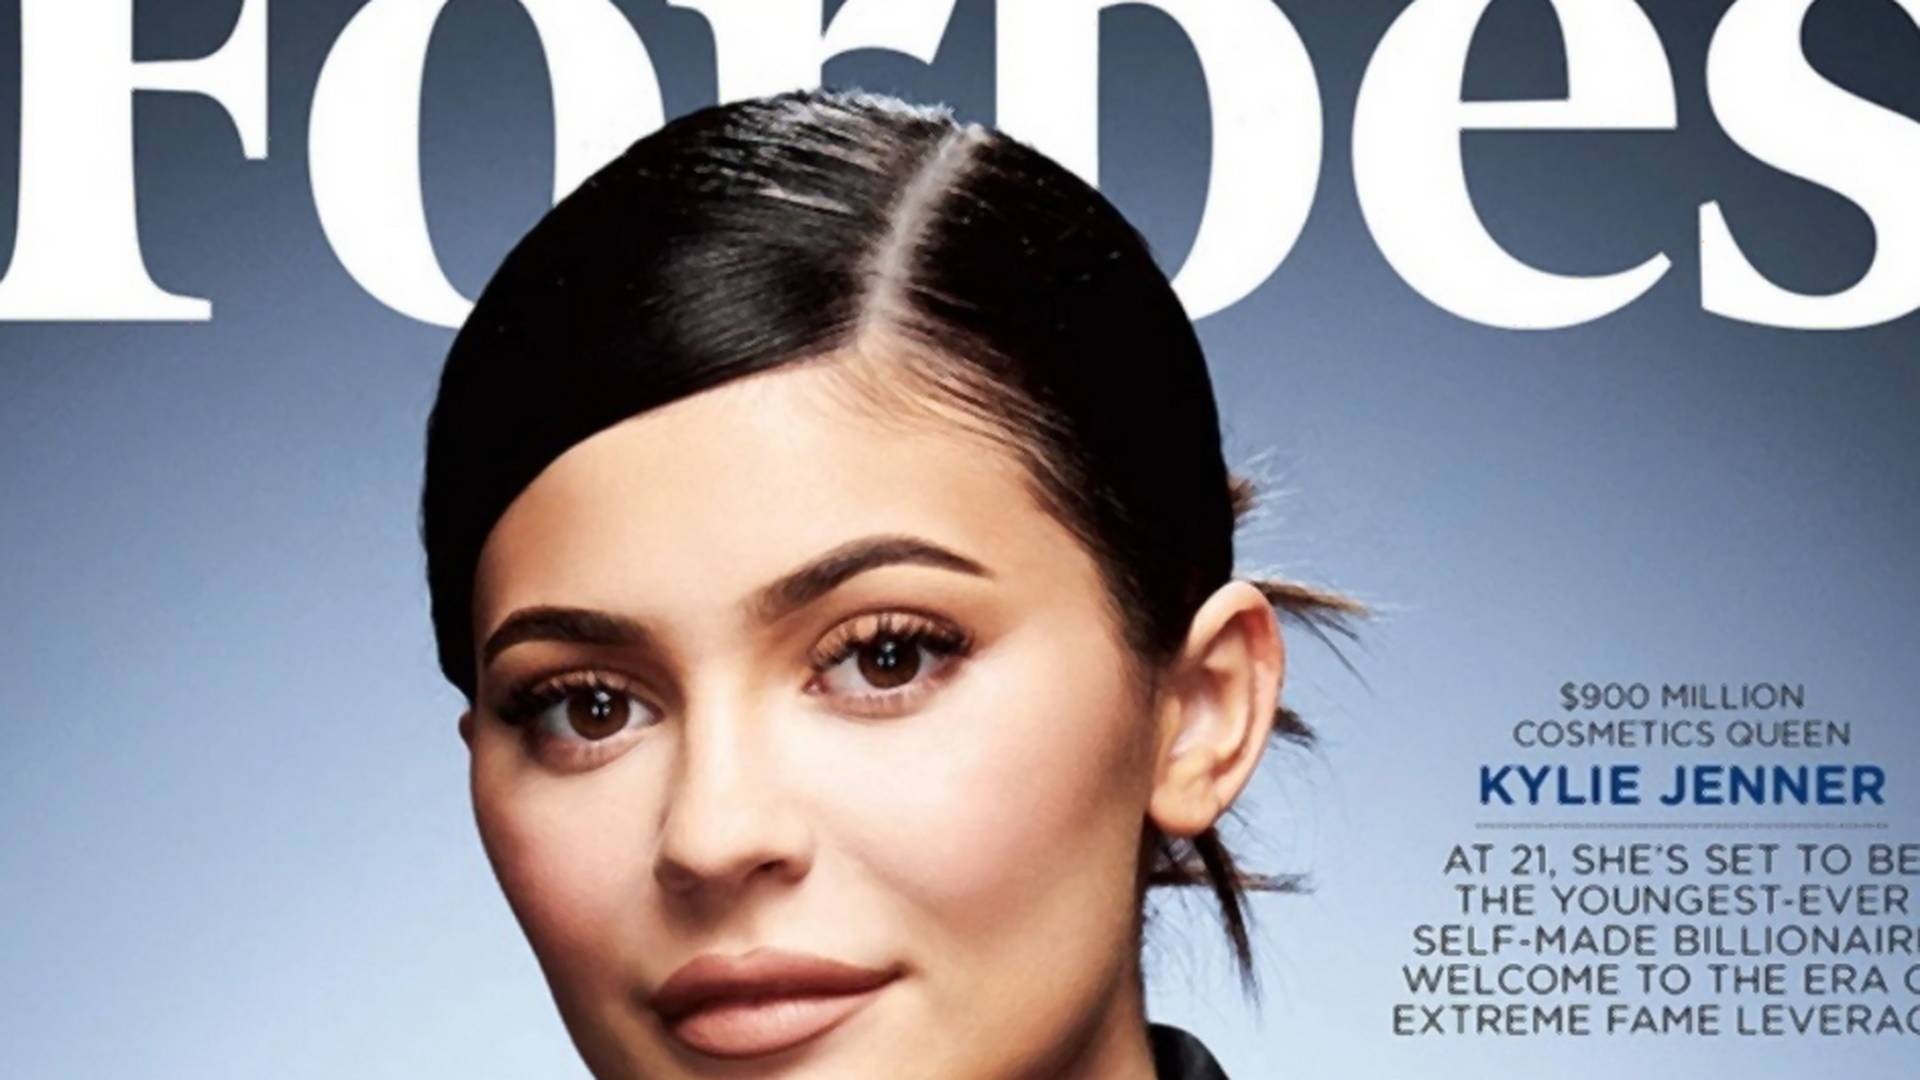 Internauci zorganizowali zrzutkę, by pomóc Kylie Jenner stać się najmłodszą miliarderką